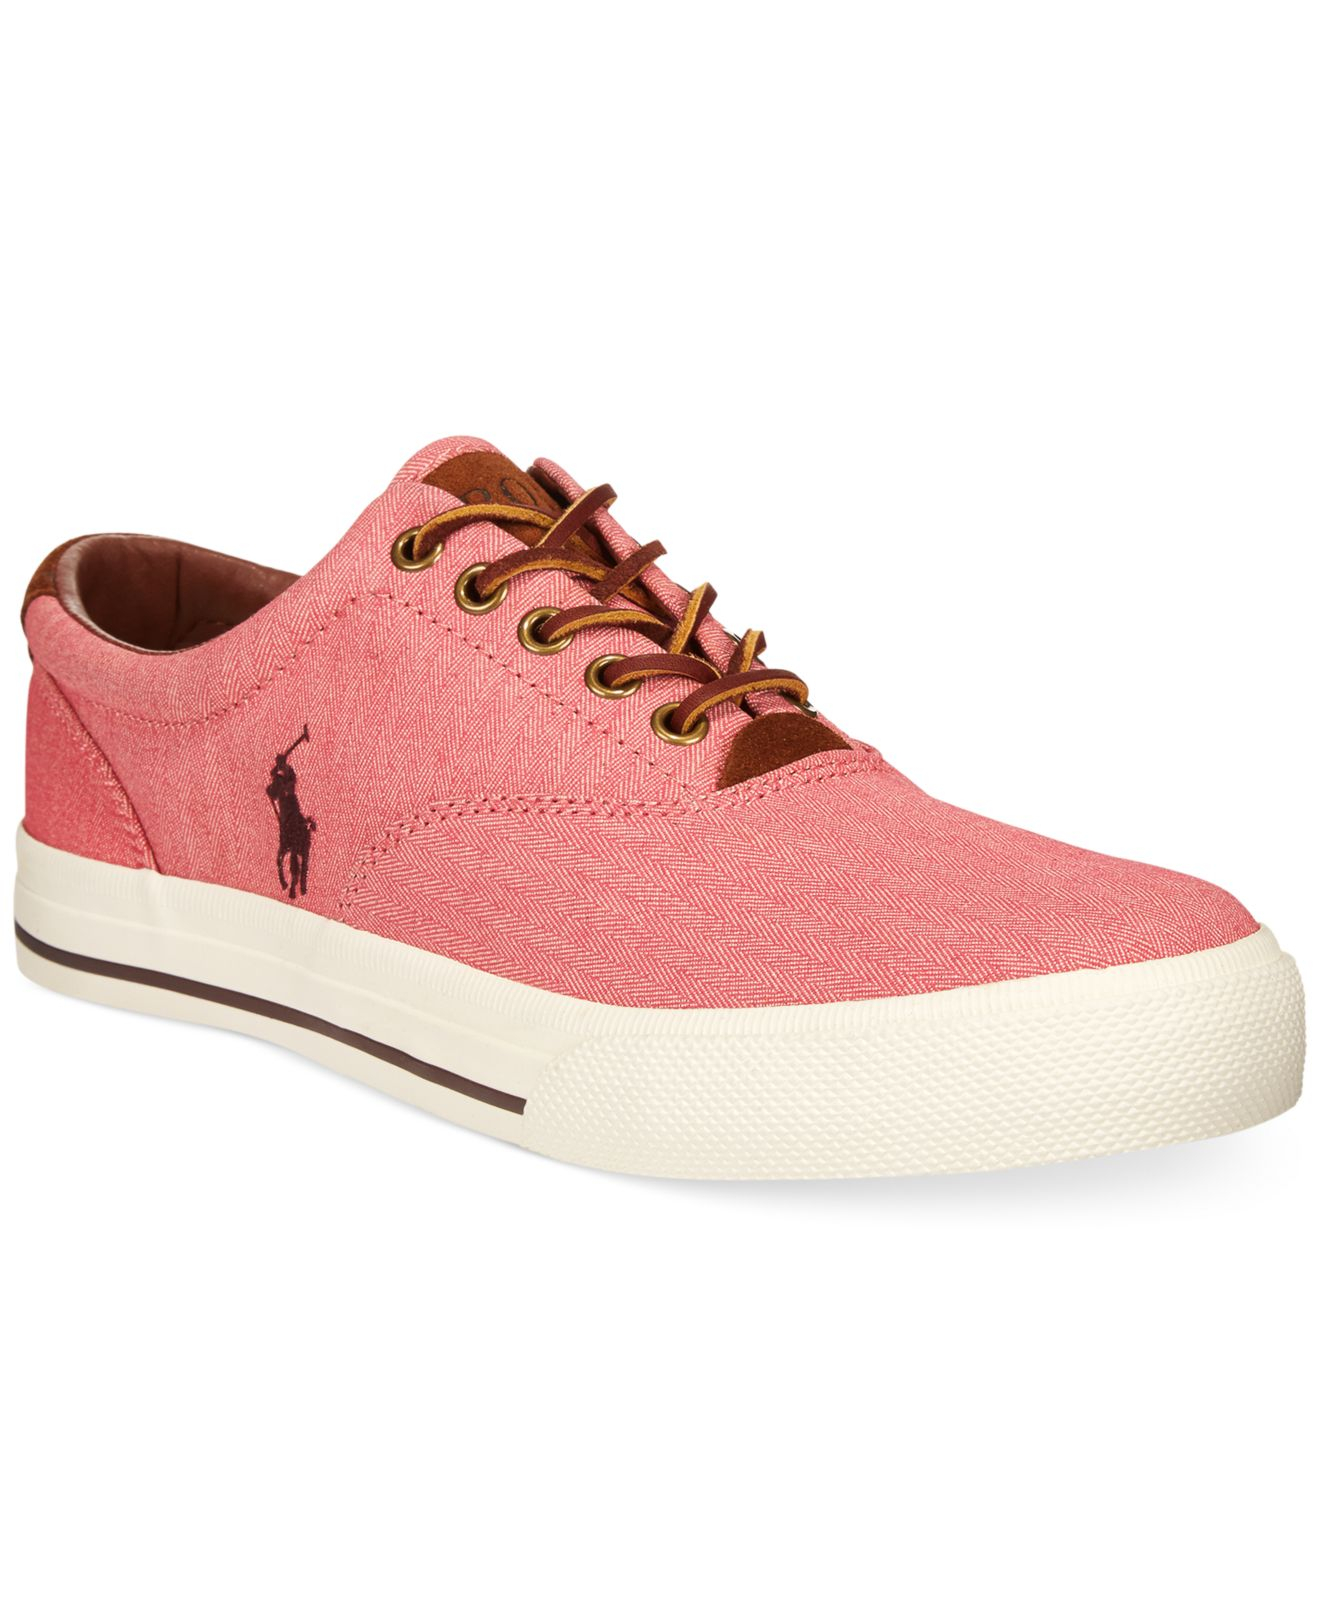 ralph lauren shoes pink - 57% OFF 